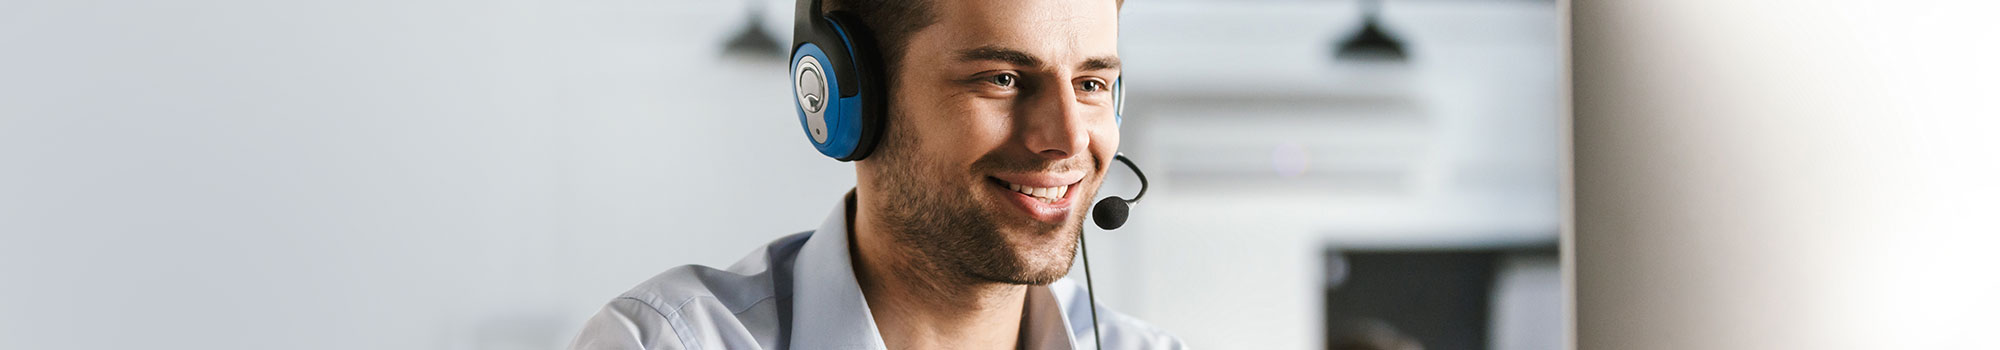 Call Center Mitarbeiter mit Headset vor einem Computer und weiterem Mitarbeiter im Hintergrund